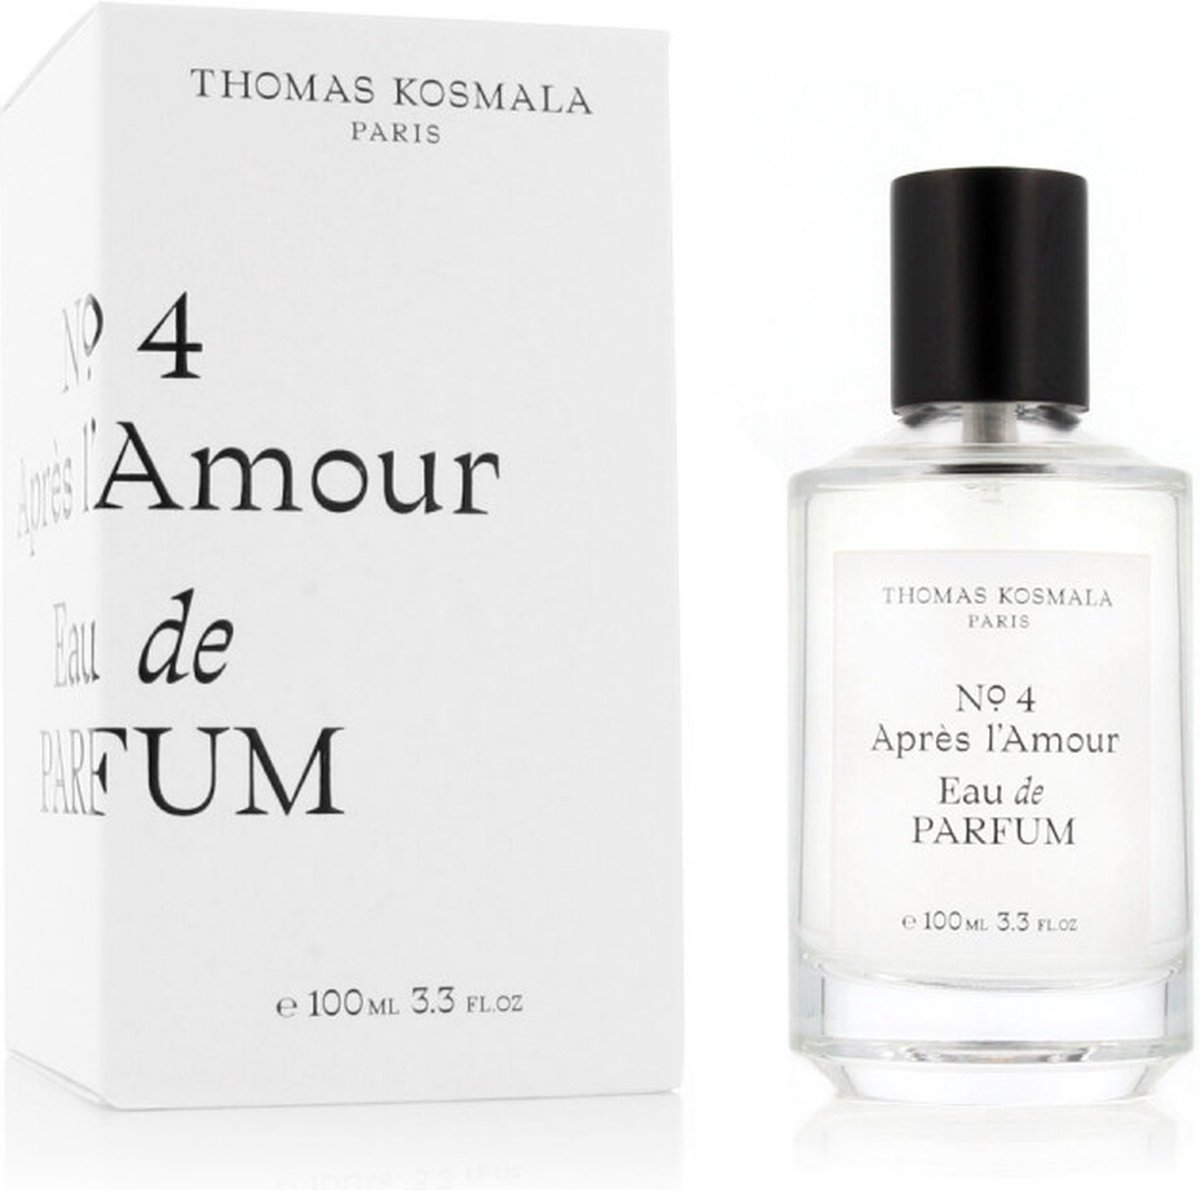 Thomas Kosmala No. 4 Aprés l'Amour Eau de Parfum 100ml